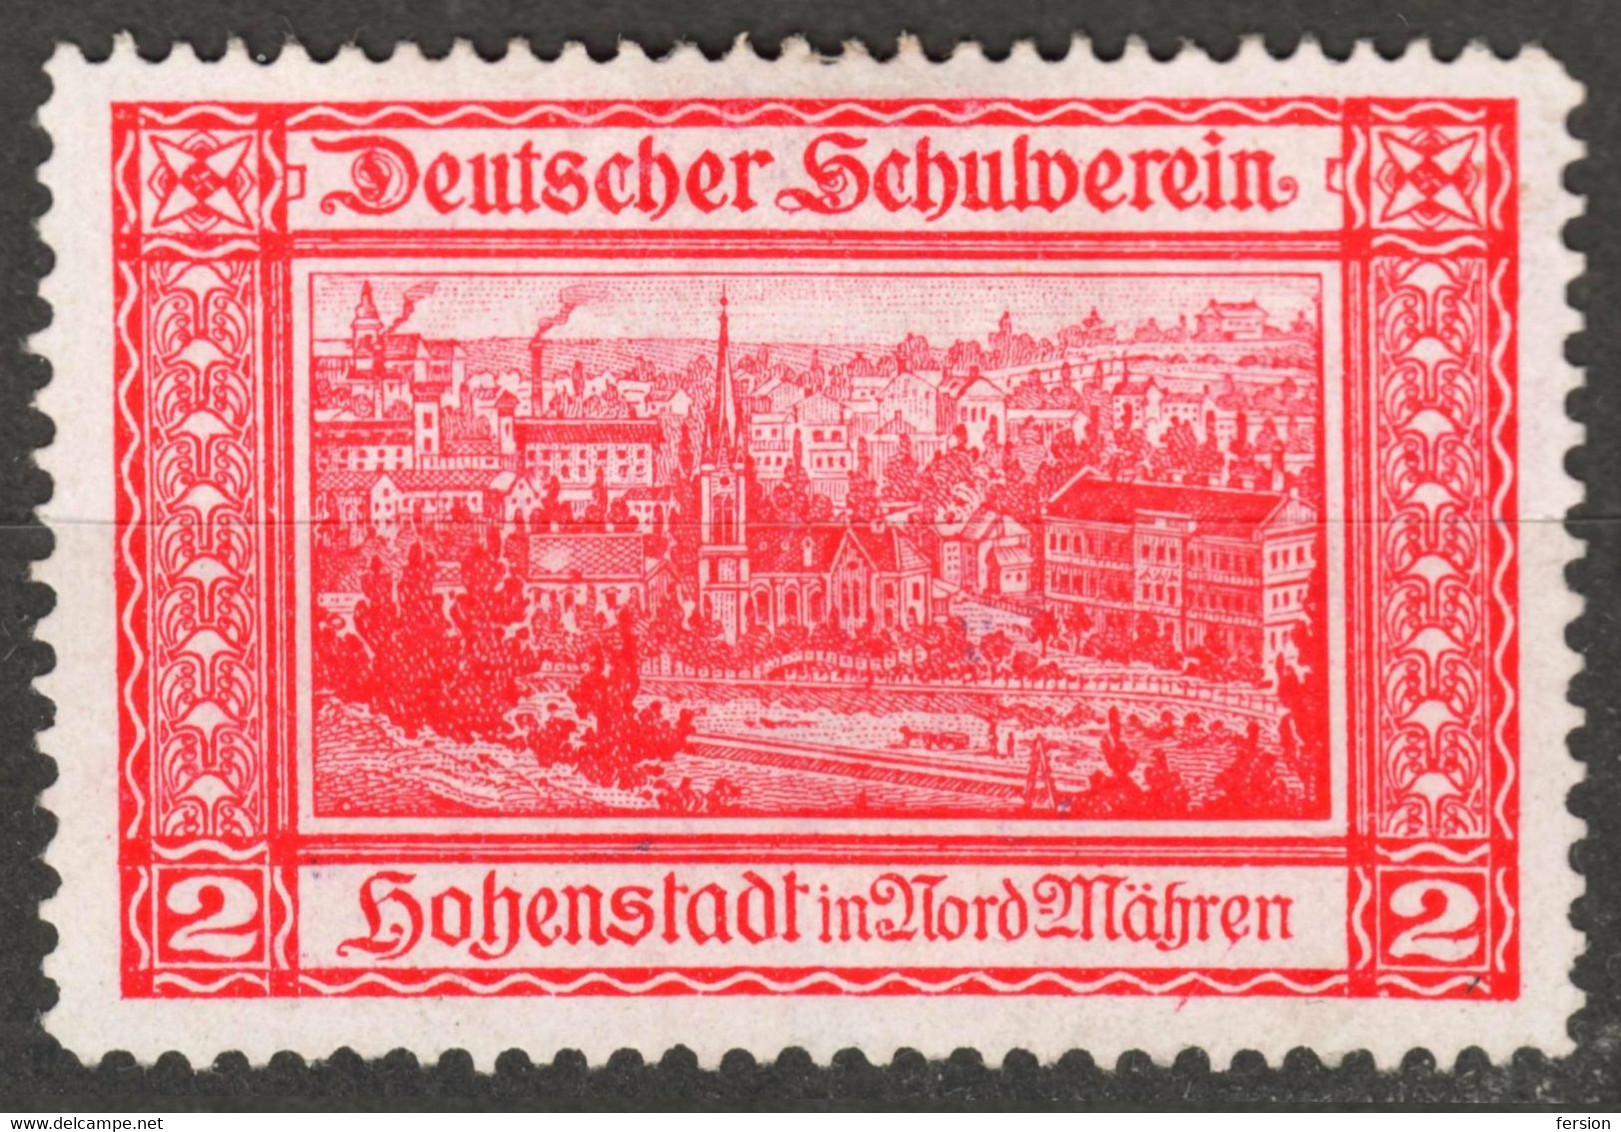 Zábřeh Hohenstadt Nordmähren Czechia Bohemia Germany Austria Label Cinderella Vignette SCHOOL Deutscher Schulverein - ...-1918 Voorfilatelie